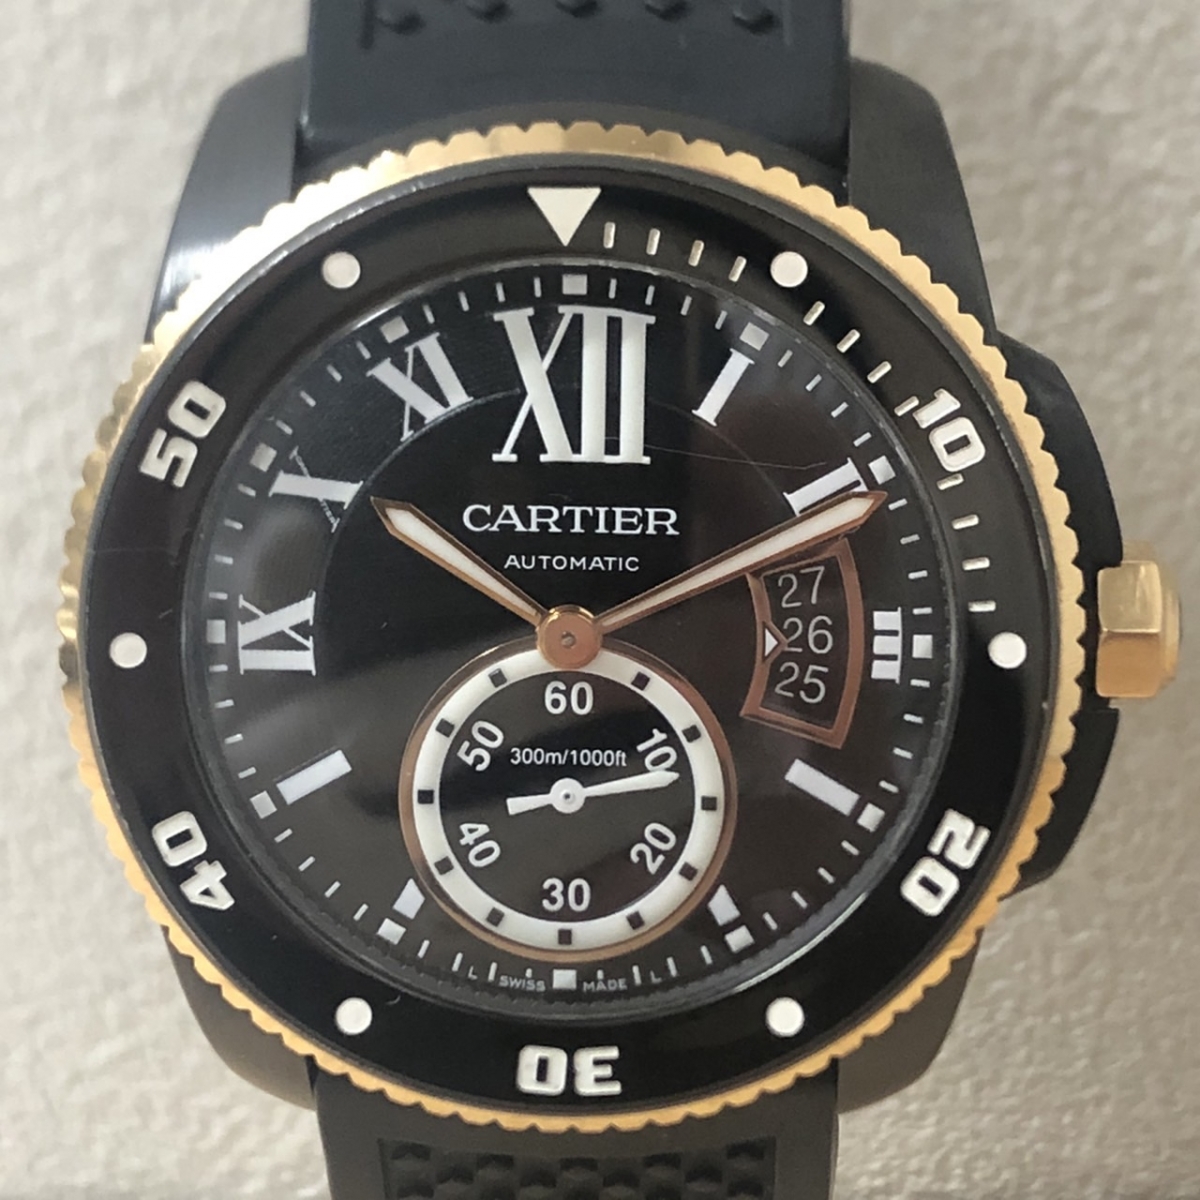 カルティエのカリブル ドゥ カルティエ ダイバー ADLCコーティング W2CA0004 K18PG×SS 自動巻 腕時計の買取実績です。